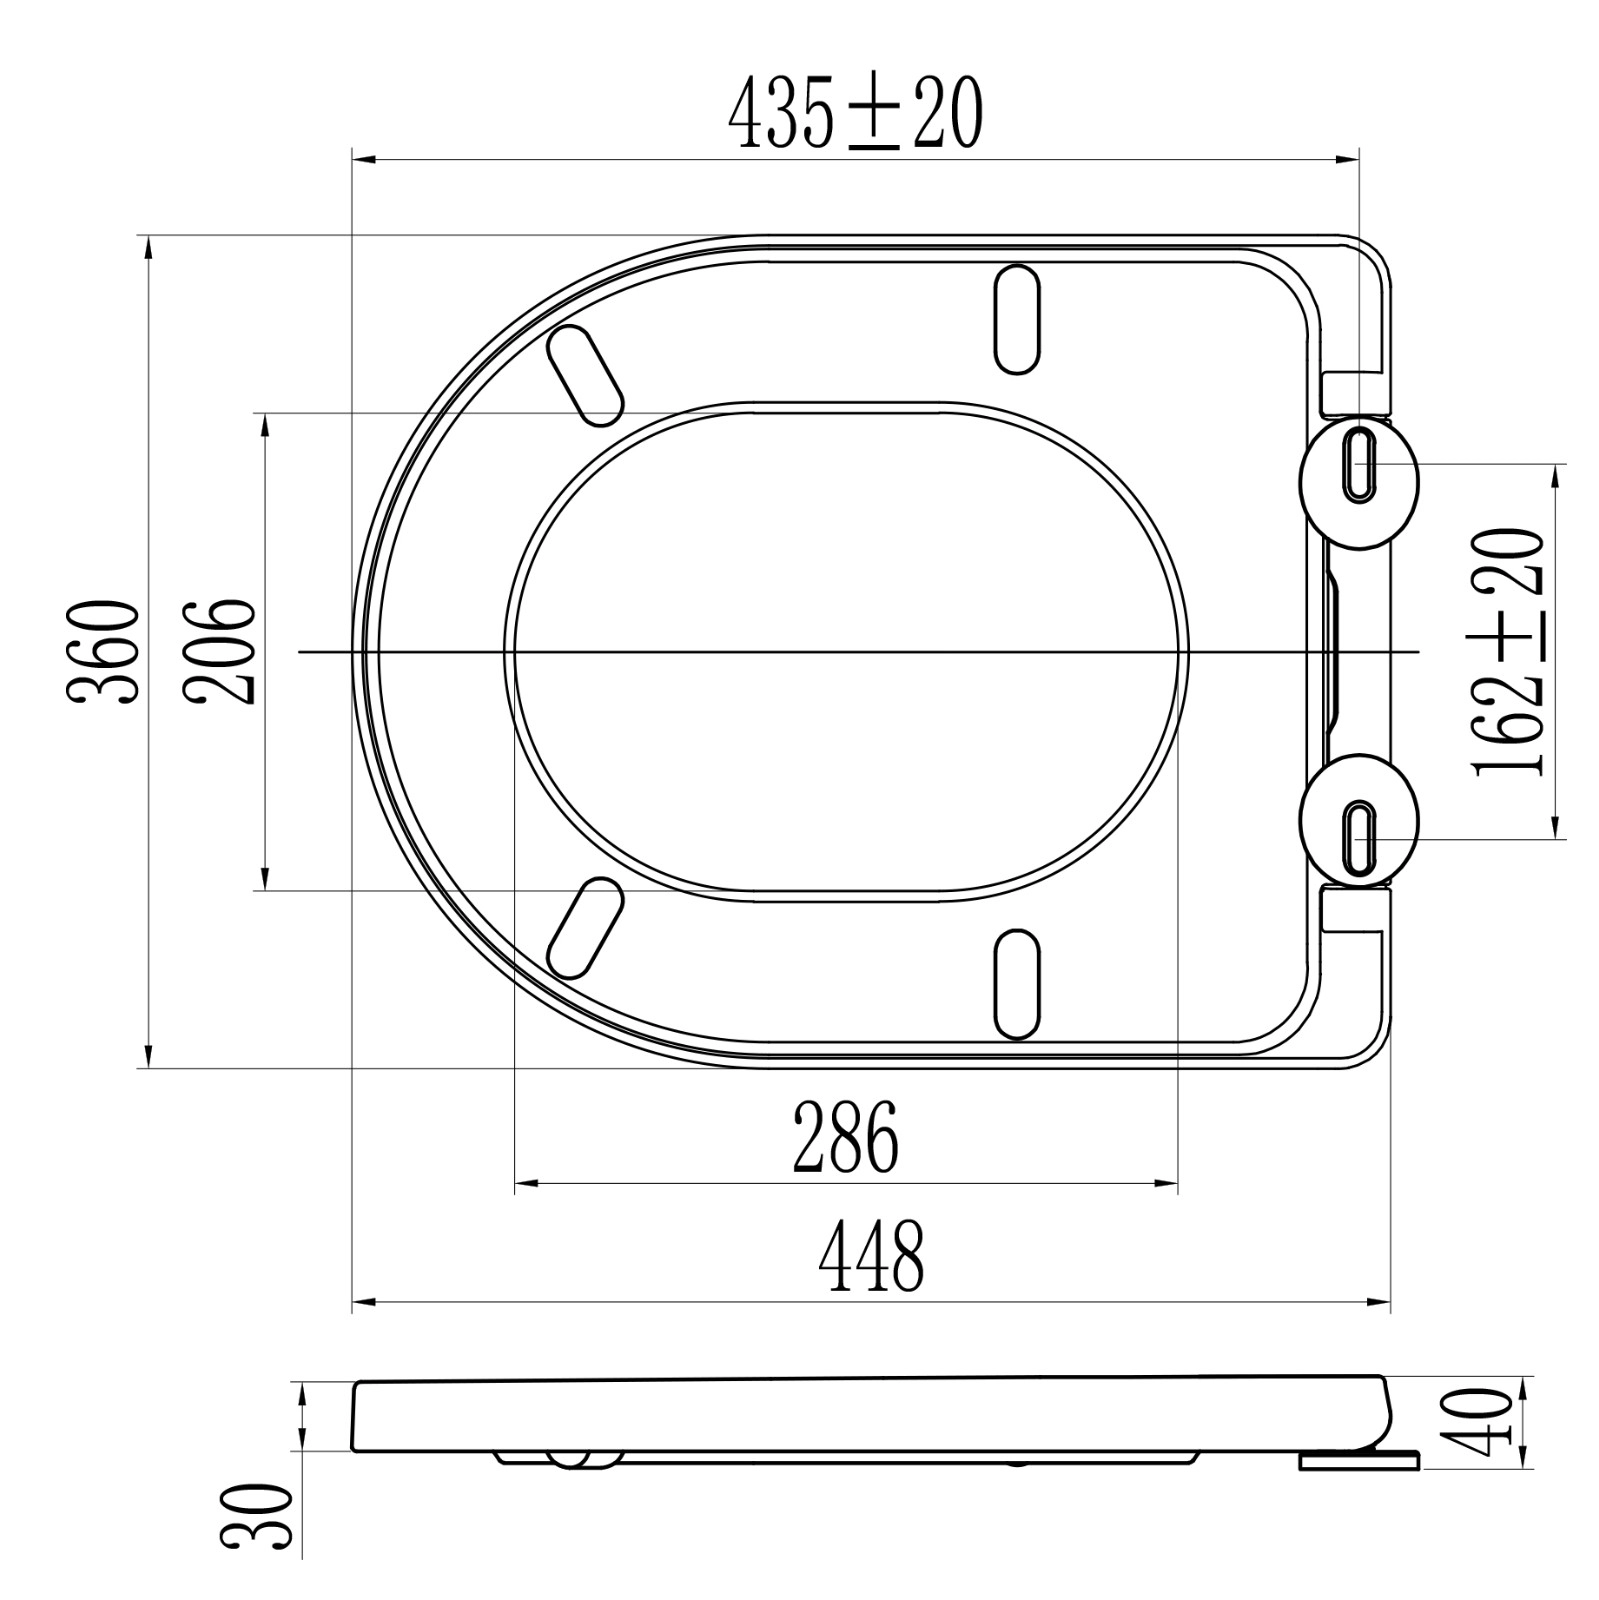 Πλαστικό επίμηκες κάλυμμα καπακιού τουαλέτας 17 ιντσών σε σχήμα PP D, λευκό κάλυμμα καθίσματος τουαλέτας